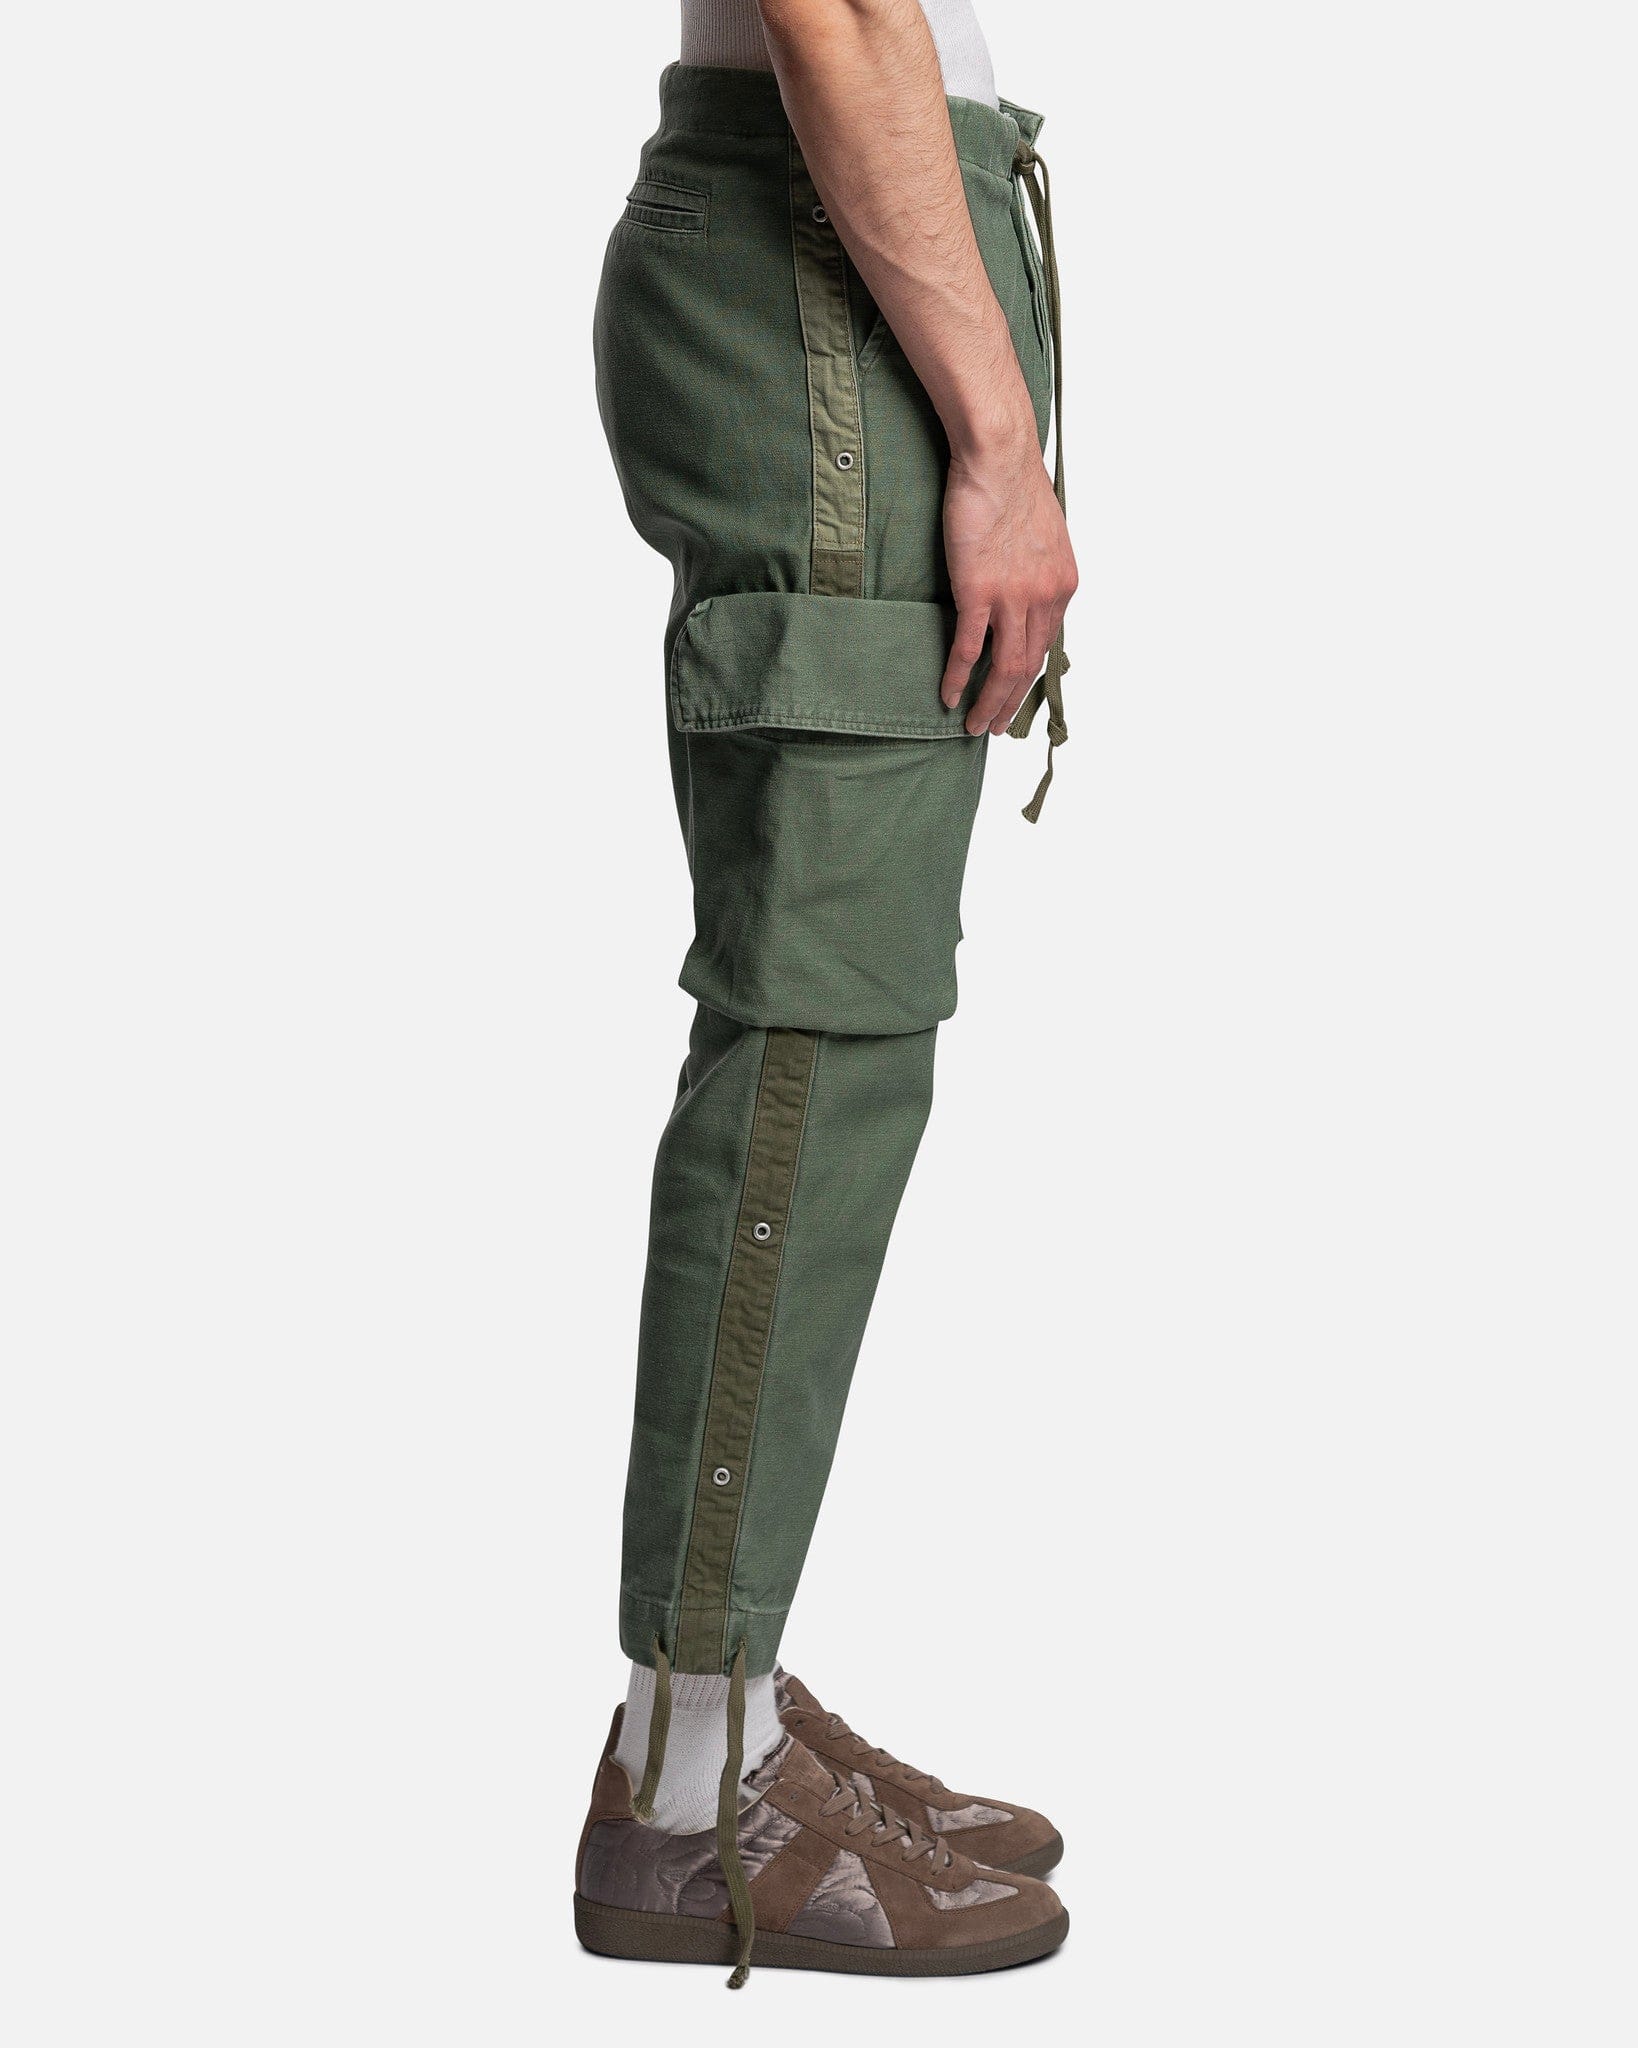 Greg Lauren Men's Pants Sleeping Bag Trouser Cargo in Army